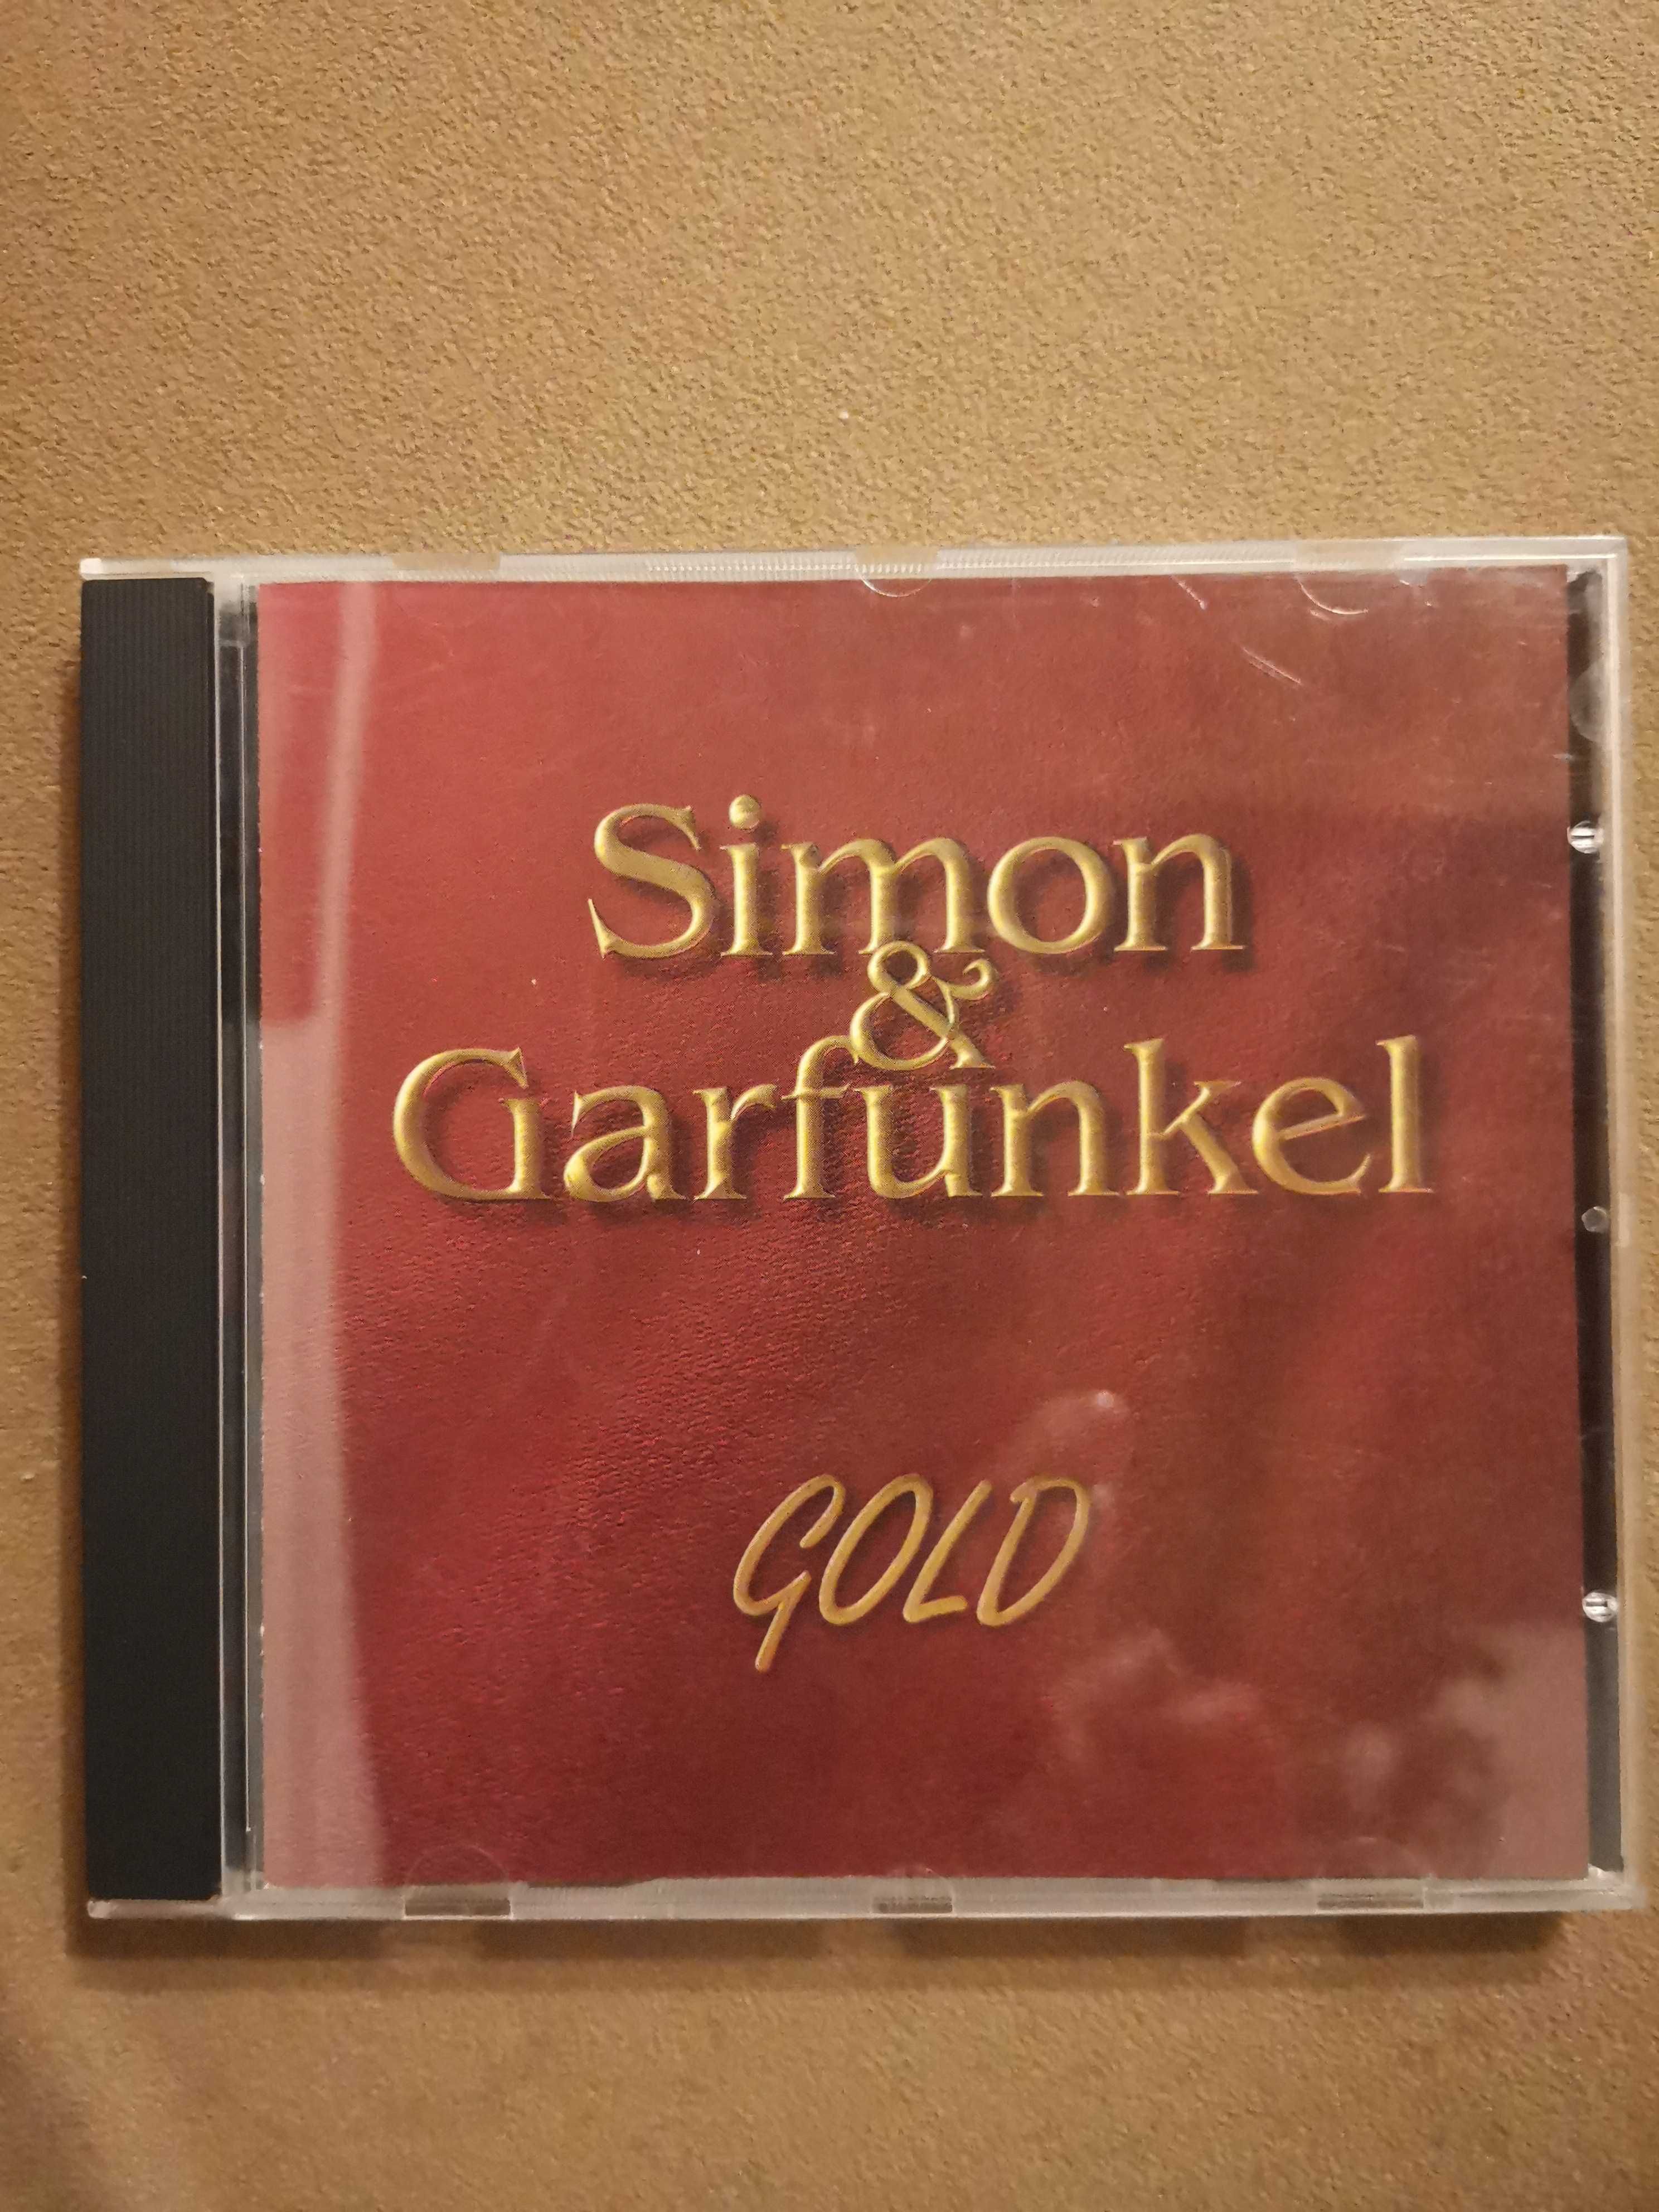 Płyta CD Simon & Garfunkel Gold